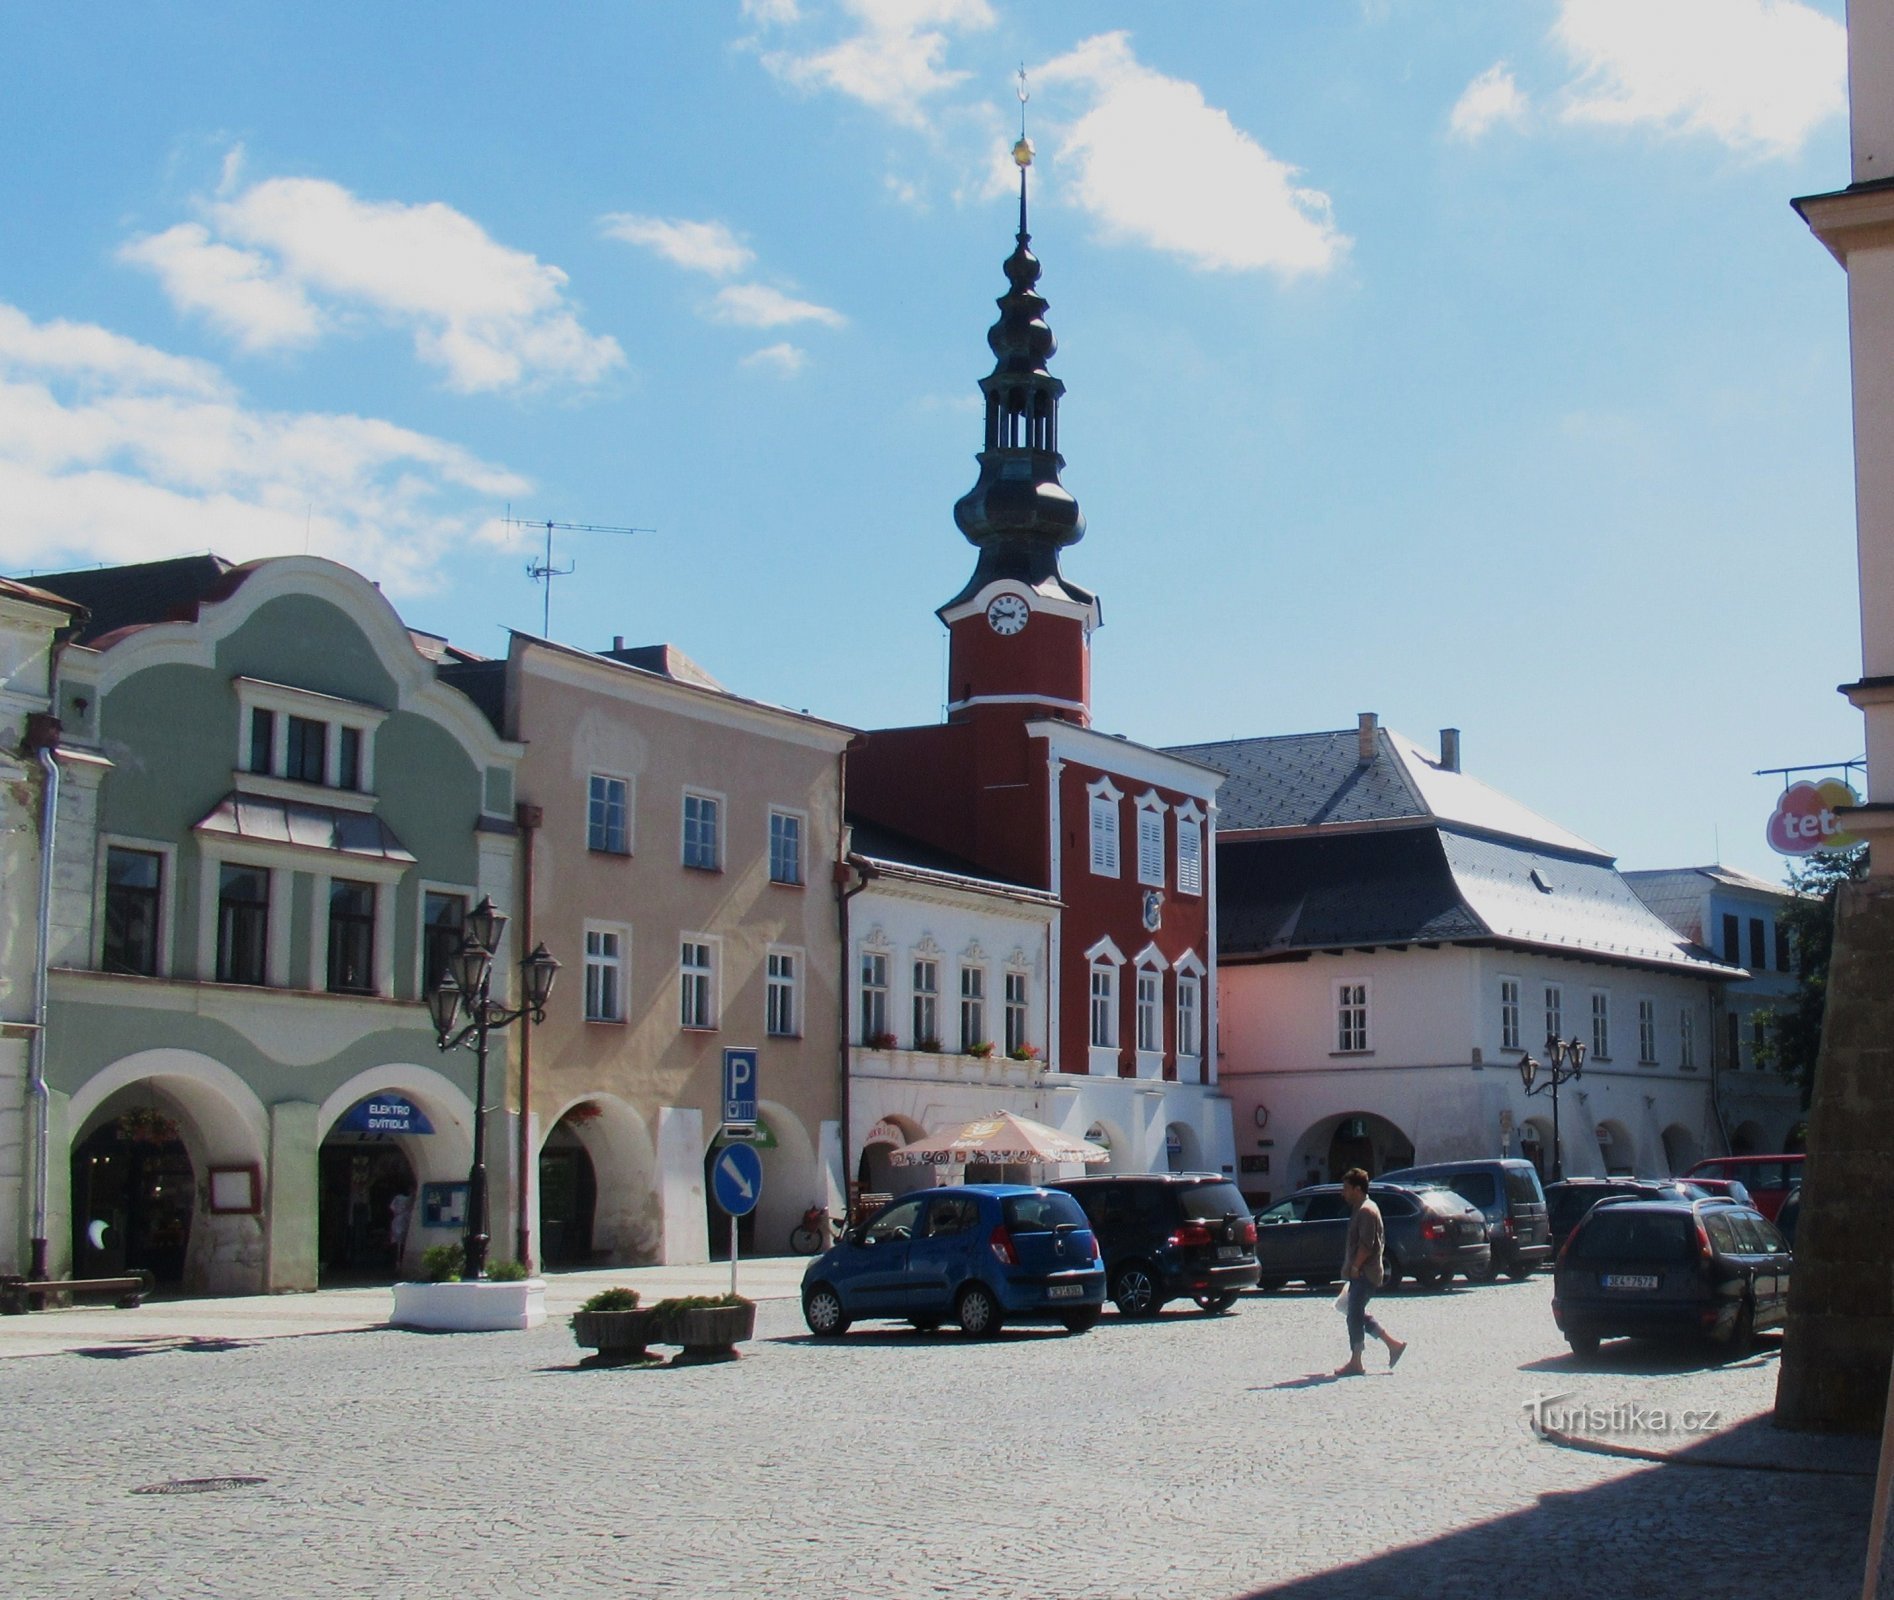 Το παλιό δημαρχείο και το σπίτι U Mouřenina στην πλατεία στο Svitavy